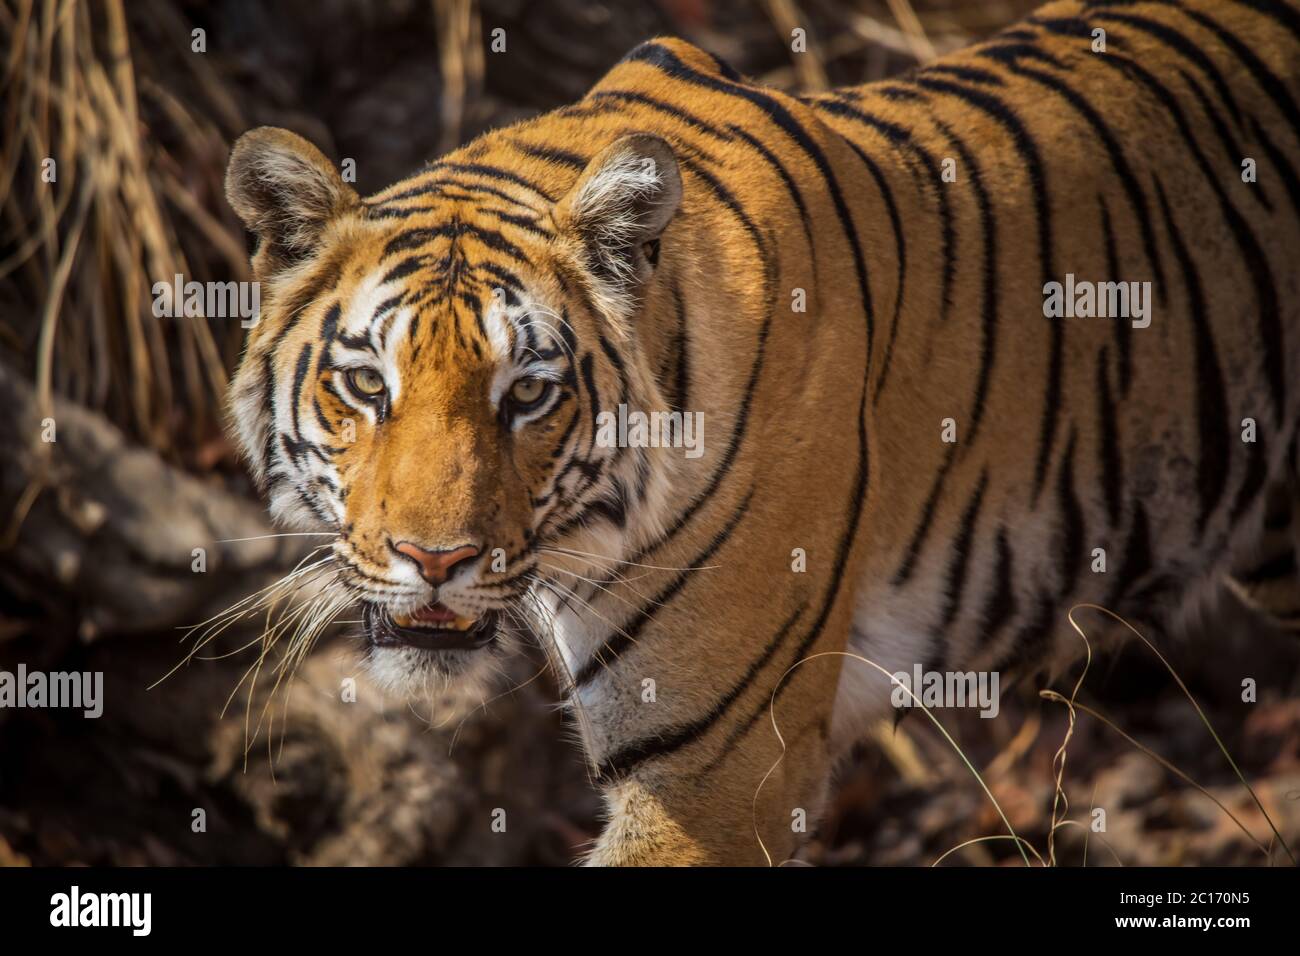 Baras, Royal Bengal Tiger, Panthera tigris, Pench Tiger Reserve, Maharashtra, India Stock Photo